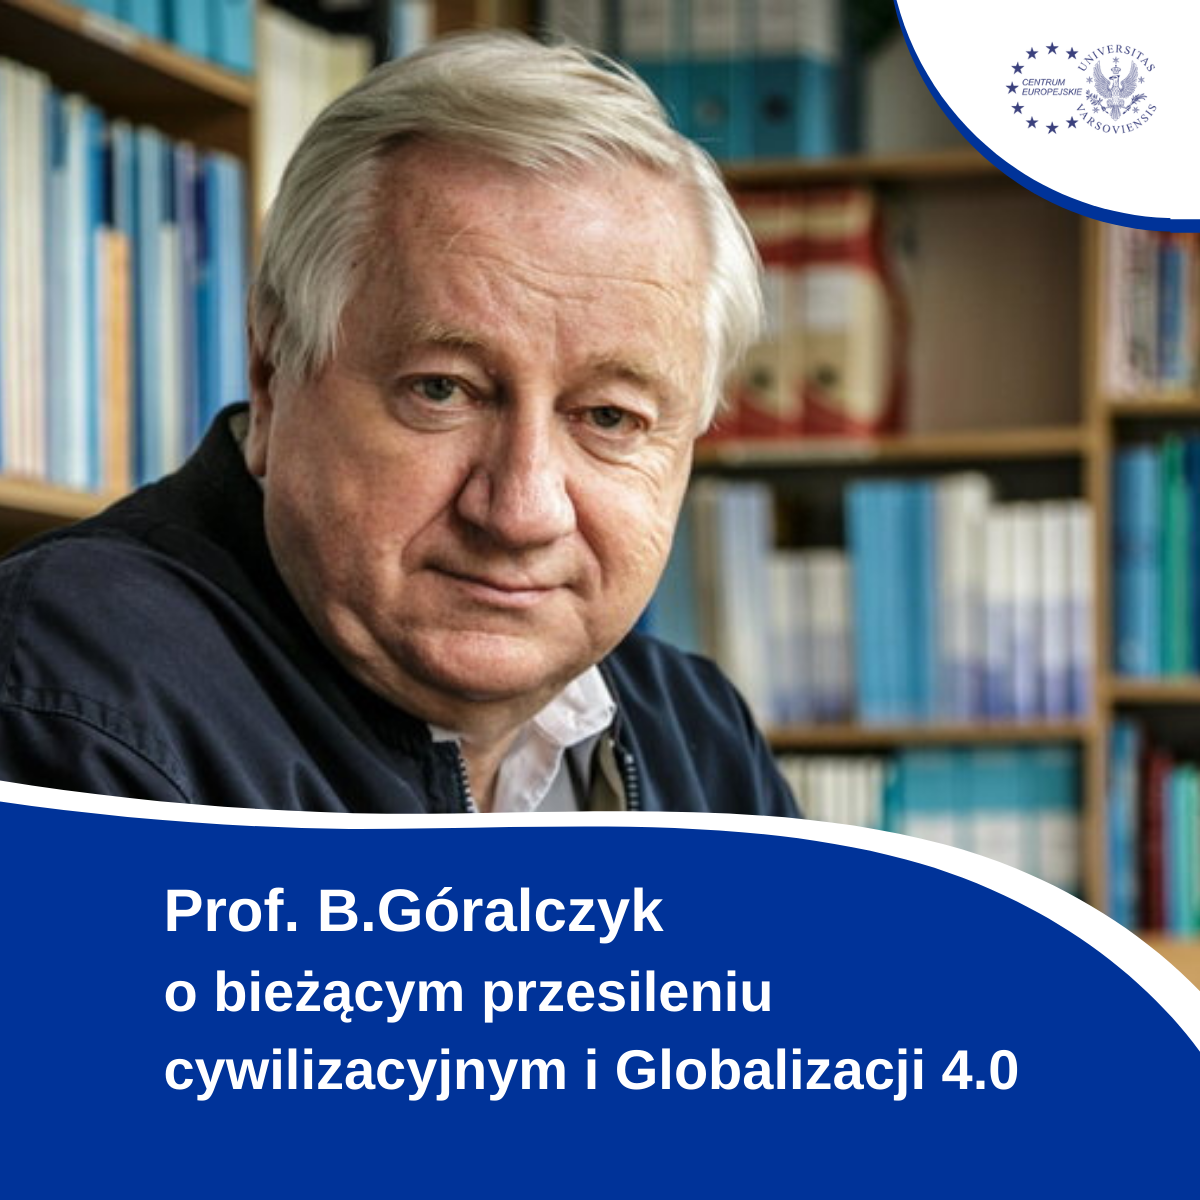 Prof. B. Góralczyk O Bieżącym Przesileniu Cywilizacyjnym I Globalizacji 4.0